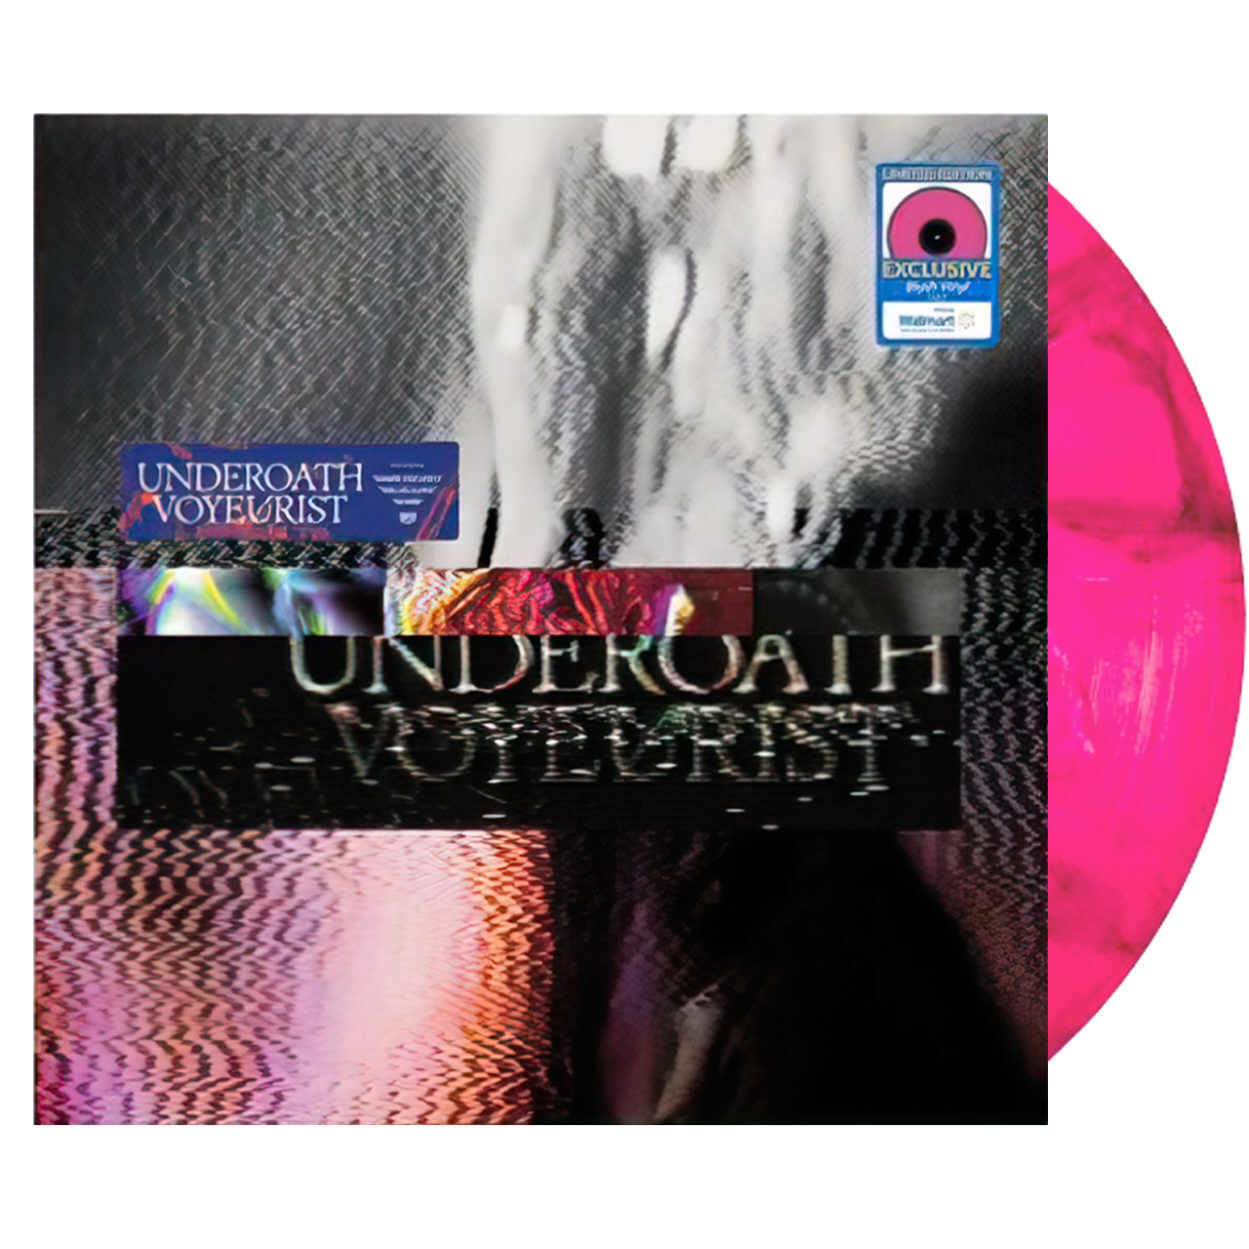 UNDEROATH Voyeurist WM Pink Vinyl